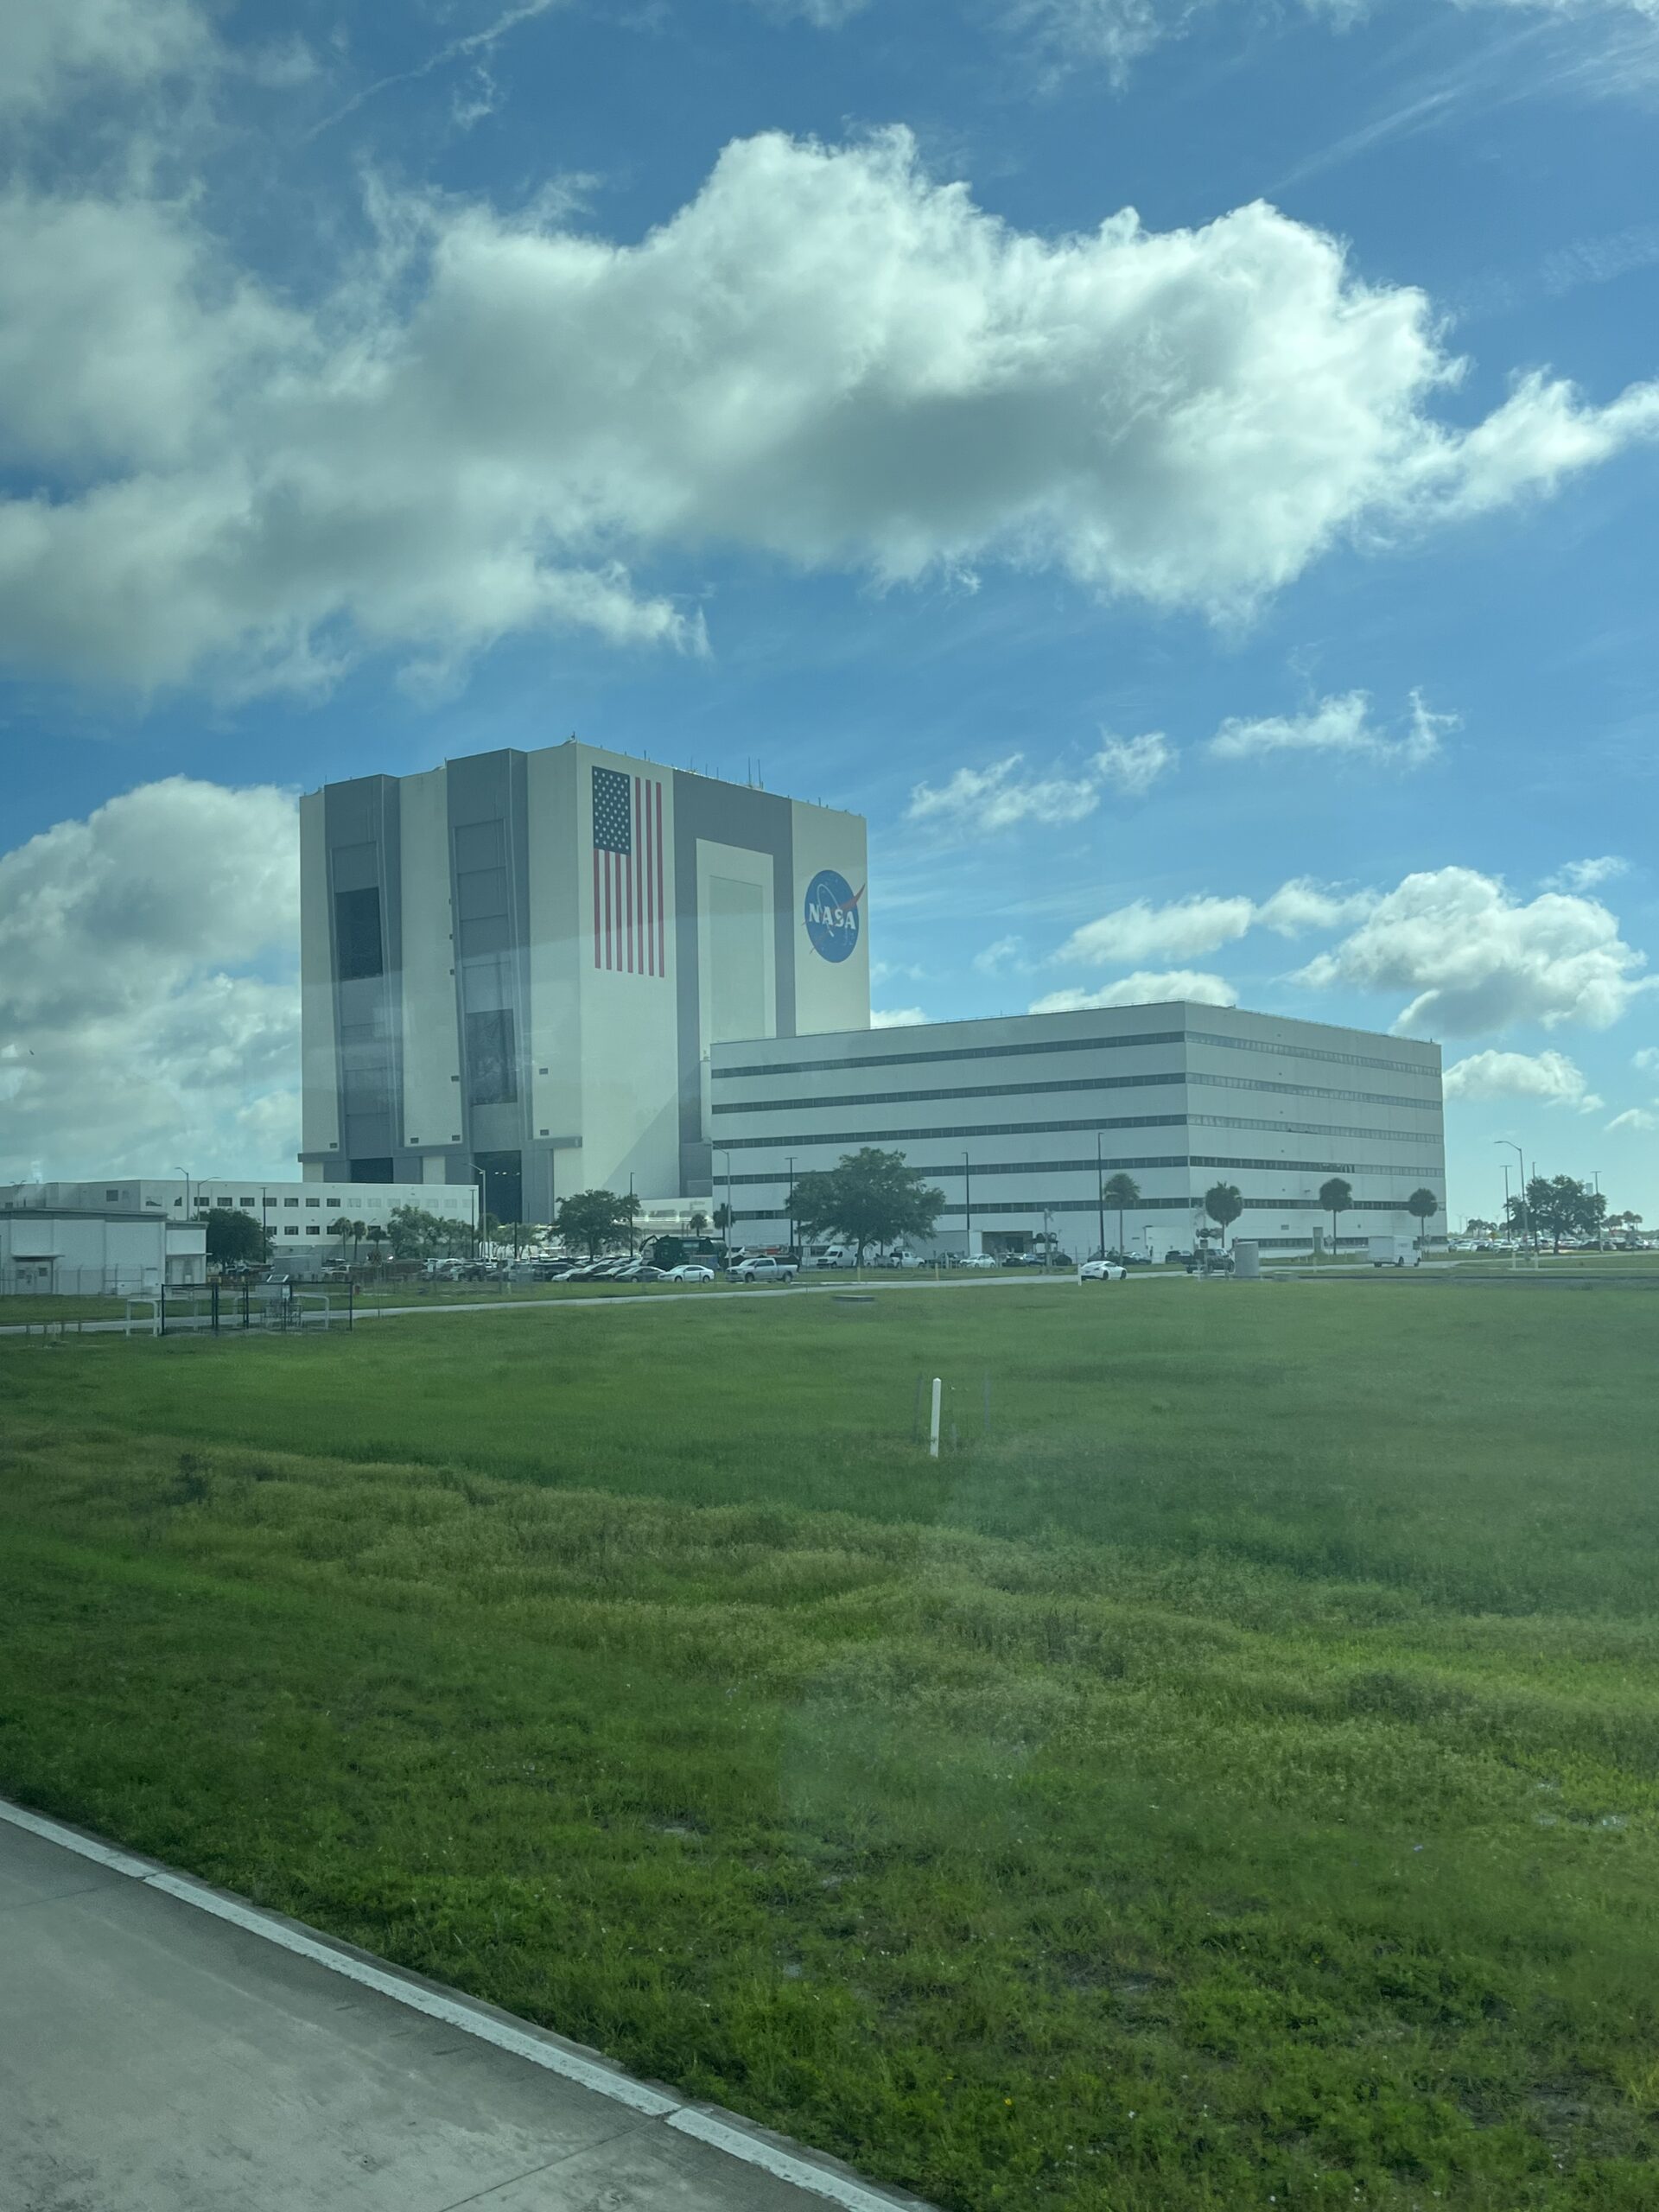 NASA visitor complex